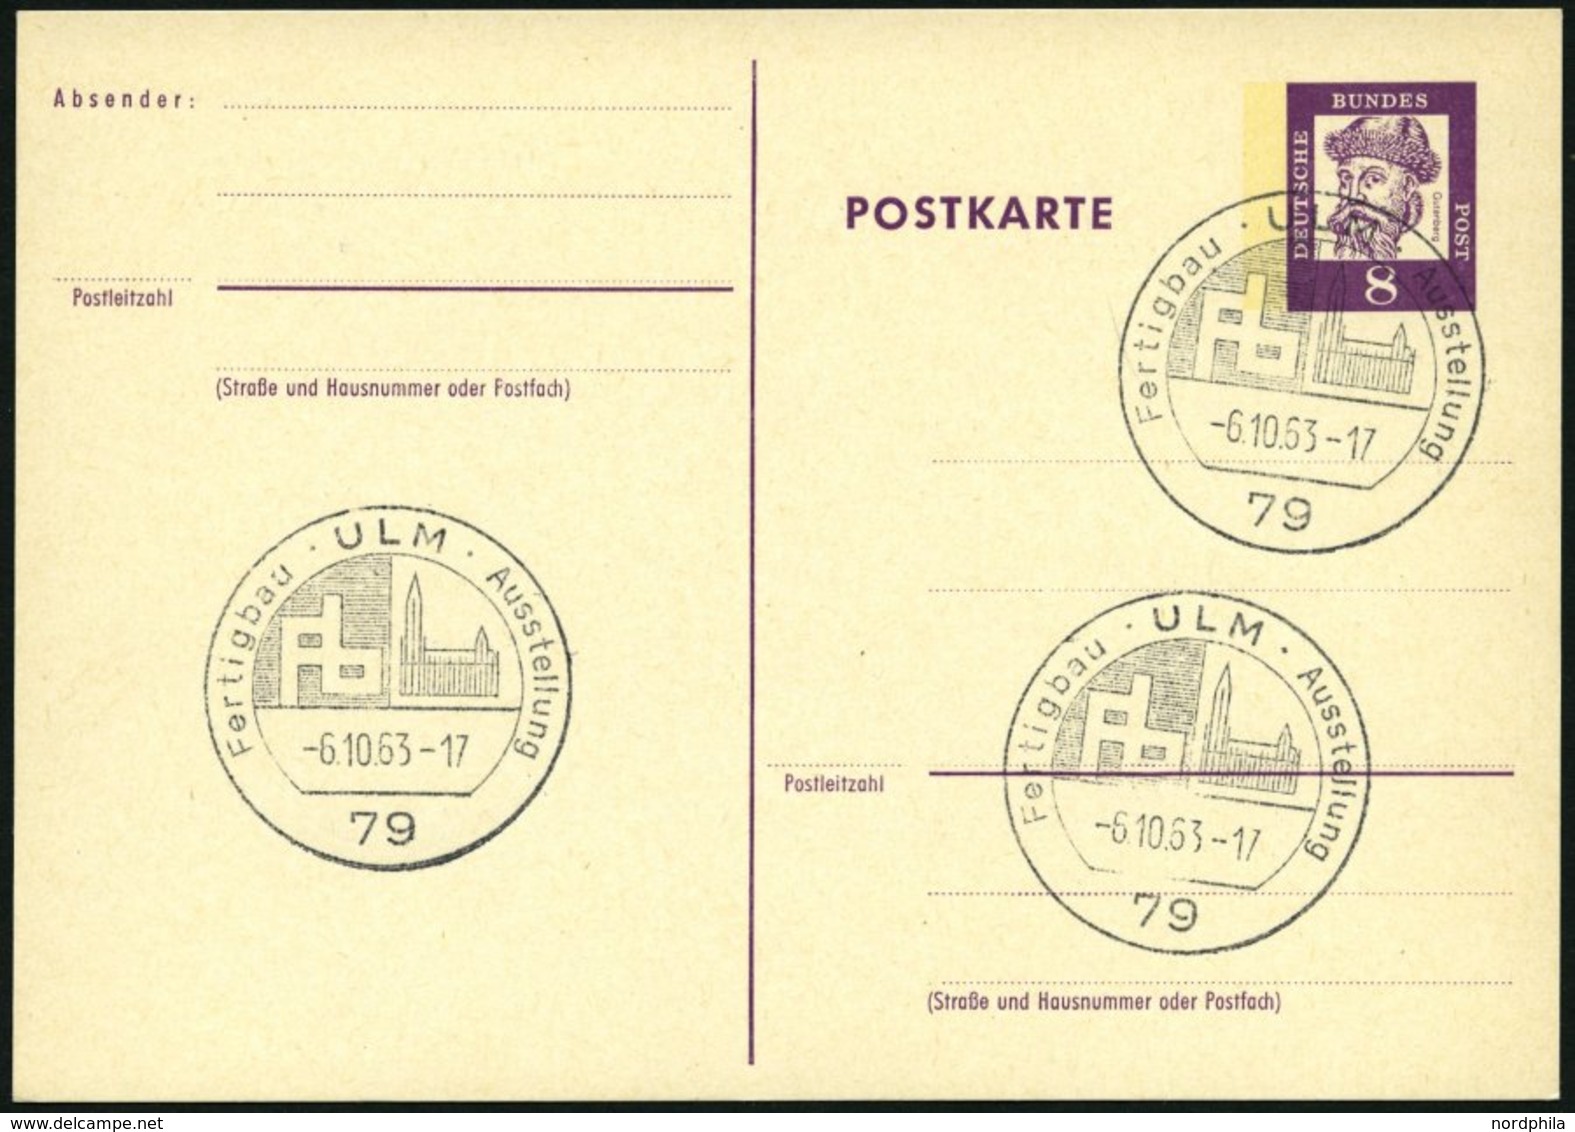 GANZSACHEN P 73 BRIEF, 1962, 8 Pf. Gutenberg, Postkarte In Grotesk-Schrift, Leer Gestempelt Mit Sonderstempel ULM FERTIG - Colecciones